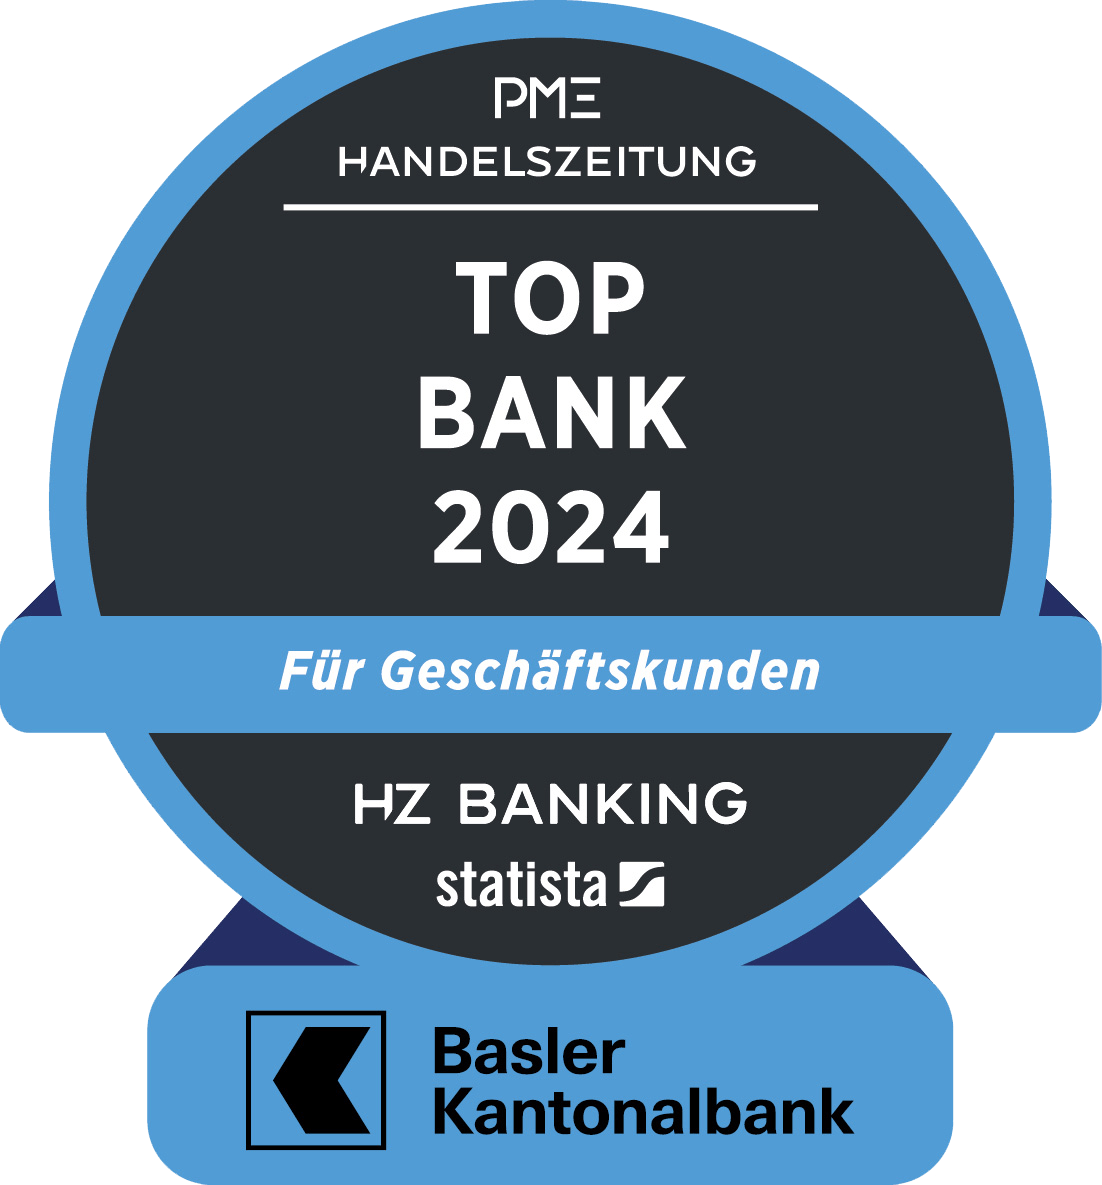 Auszeichnung Top Bank 2024 - Für Geschäftskunden